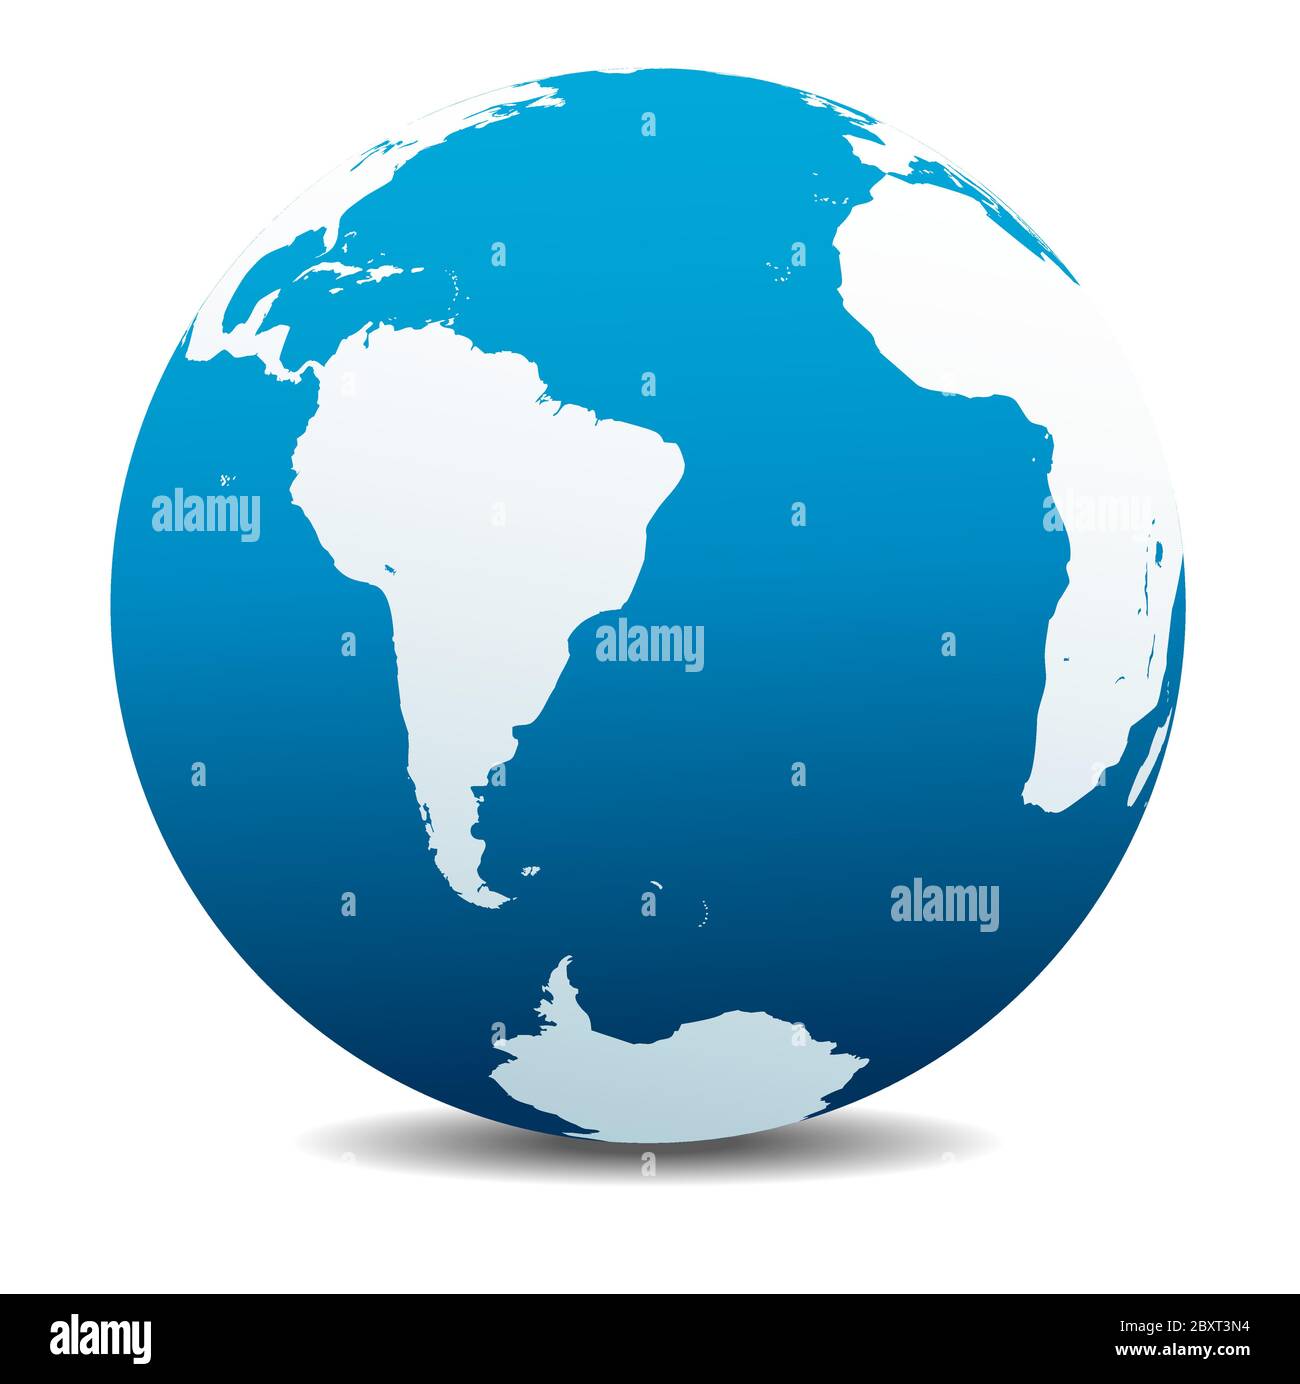 Sud America e Africa icona della mappa vettoriale del globo mondiale, Terra. Tutti gli elementi si trovano su singoli livelli nel file vettoriale. Illustrazione Vettoriale